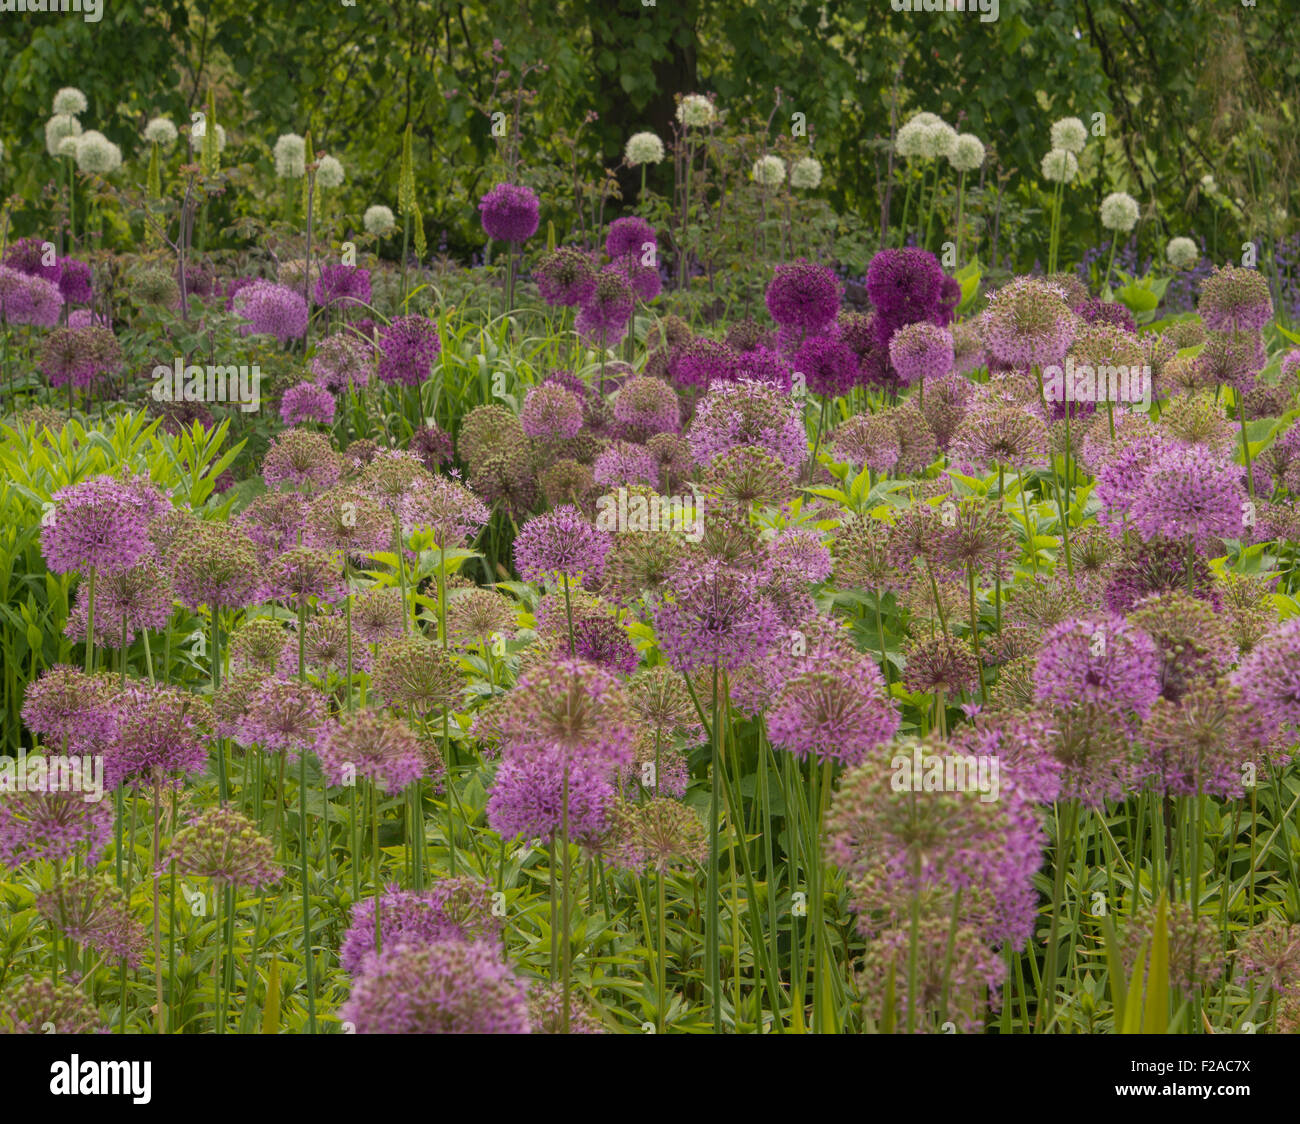 Allium plantas floración Foto de stock